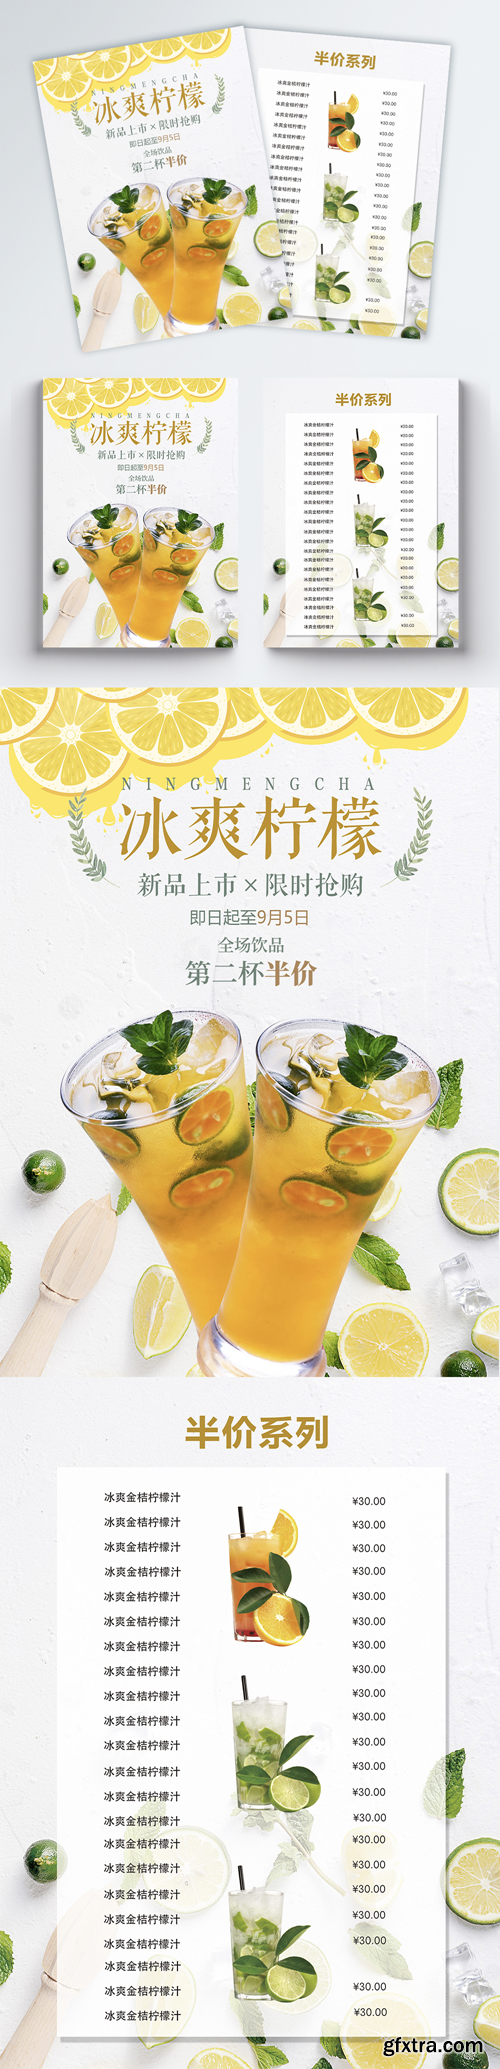 beverage shop sales promotion flyer